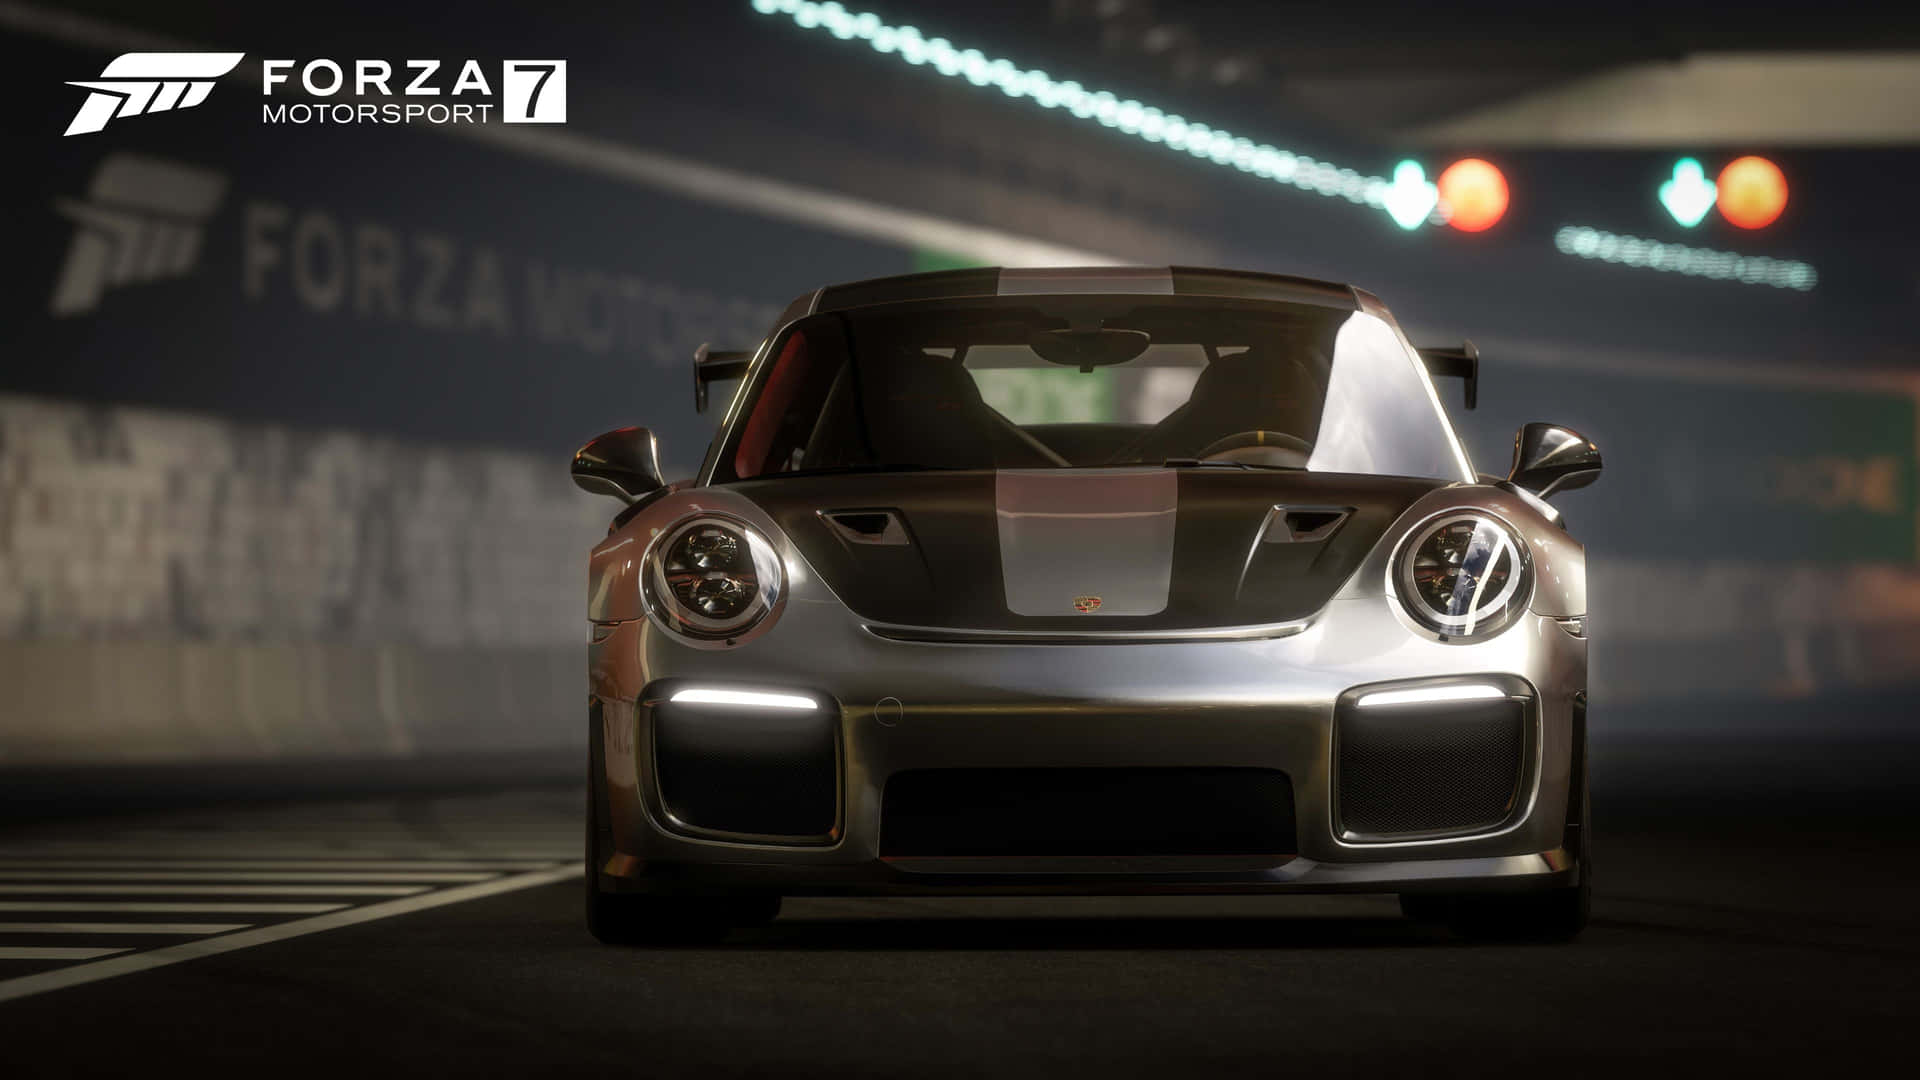 Forza7 Gt2 - Porsche 911 Gt2 - Gt2 - Gt2 - Gt2 - G Wallpaper